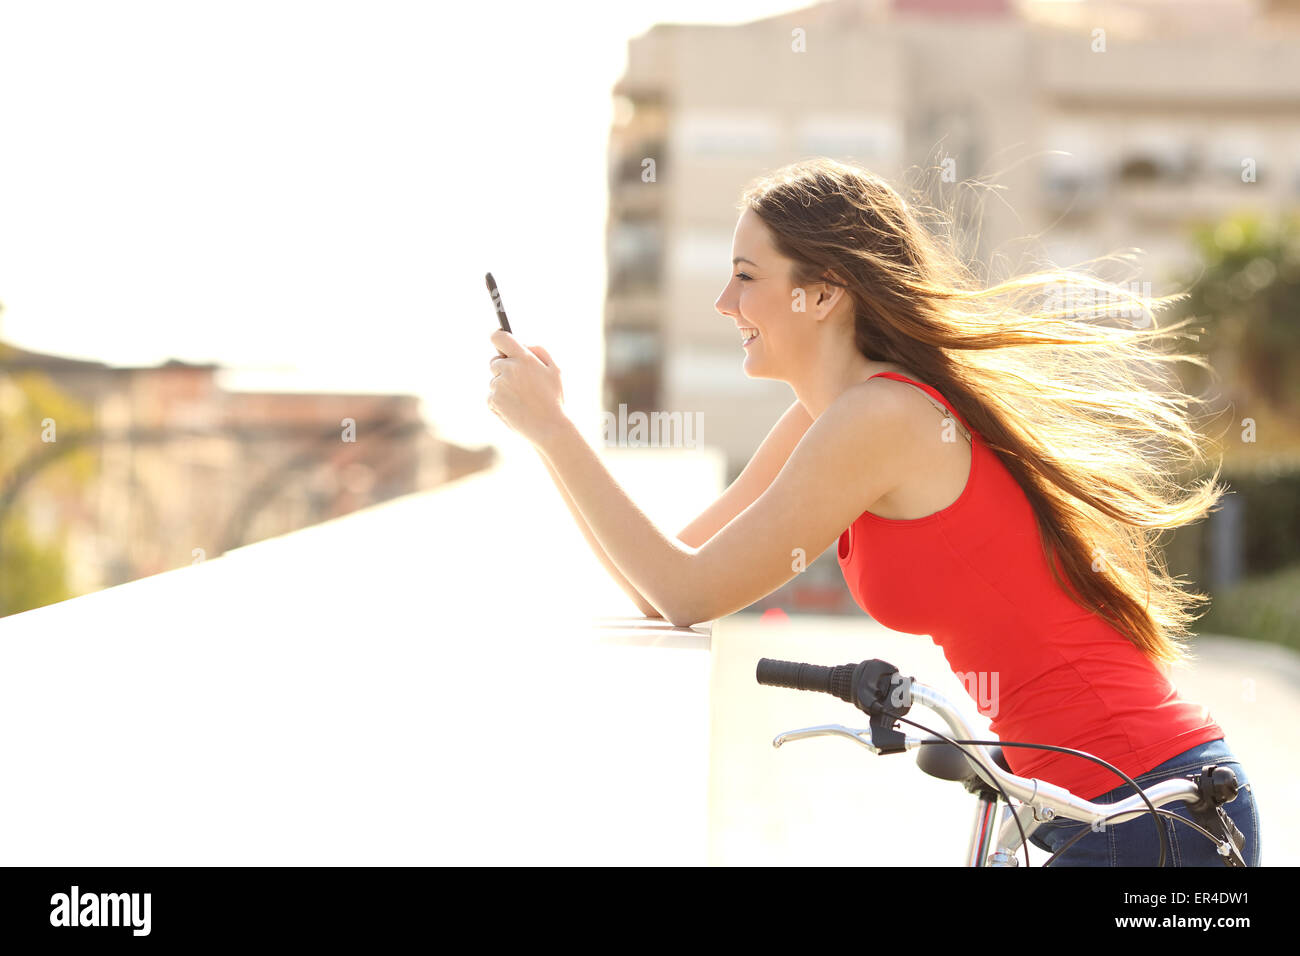 Profilo di un adolescente ragazza utilizzando un telefono cellulare in un parco in una soleggiata giornata estiva con vento muovendo i suoi capelli Foto Stock